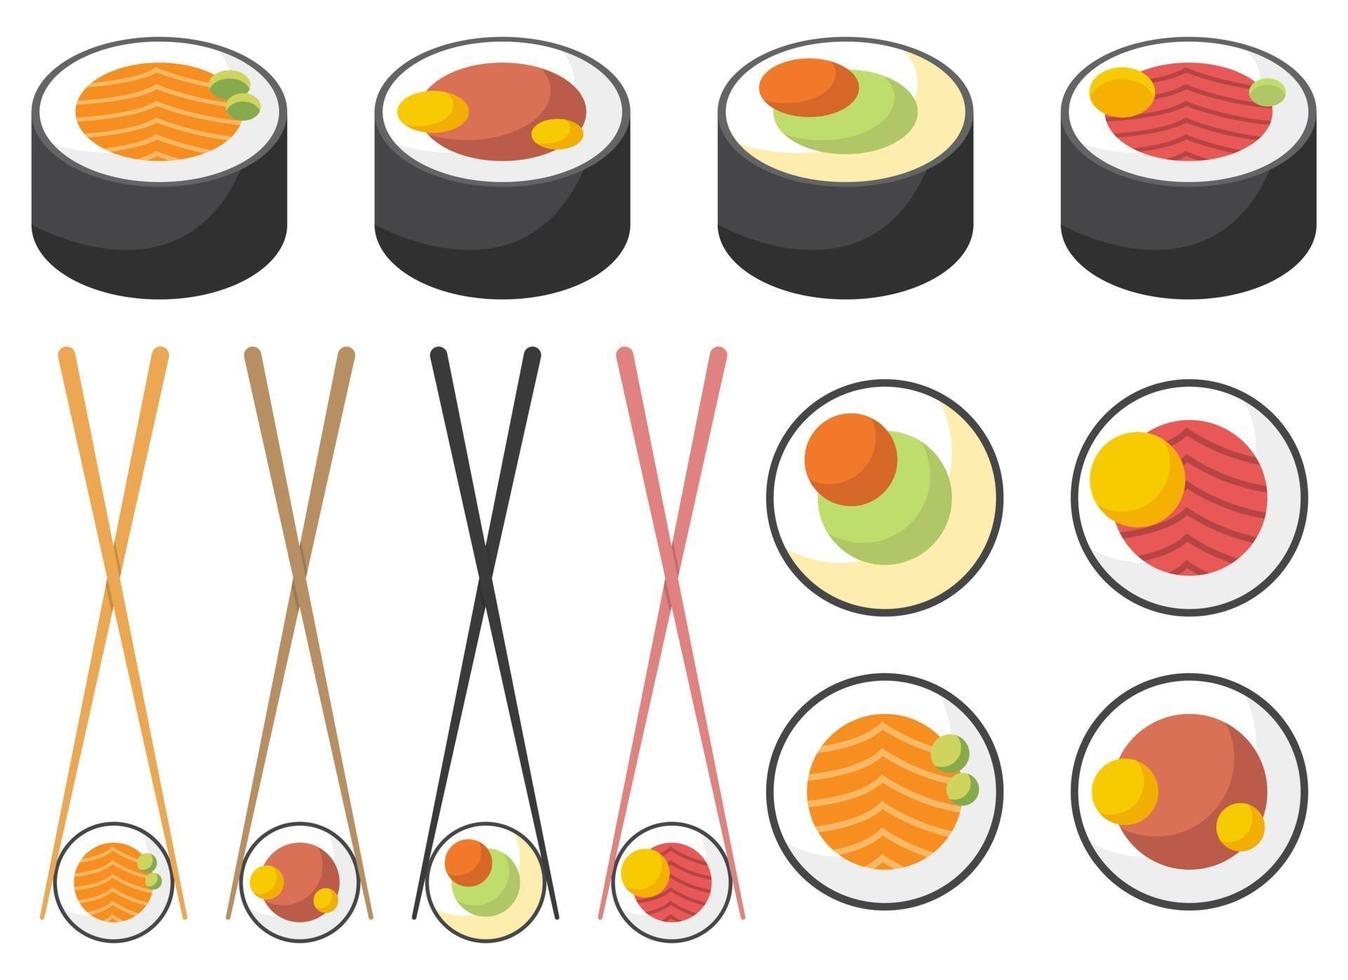 sushi asiatico disegno vettoriale illustrazione set isolato su sfondo bianco